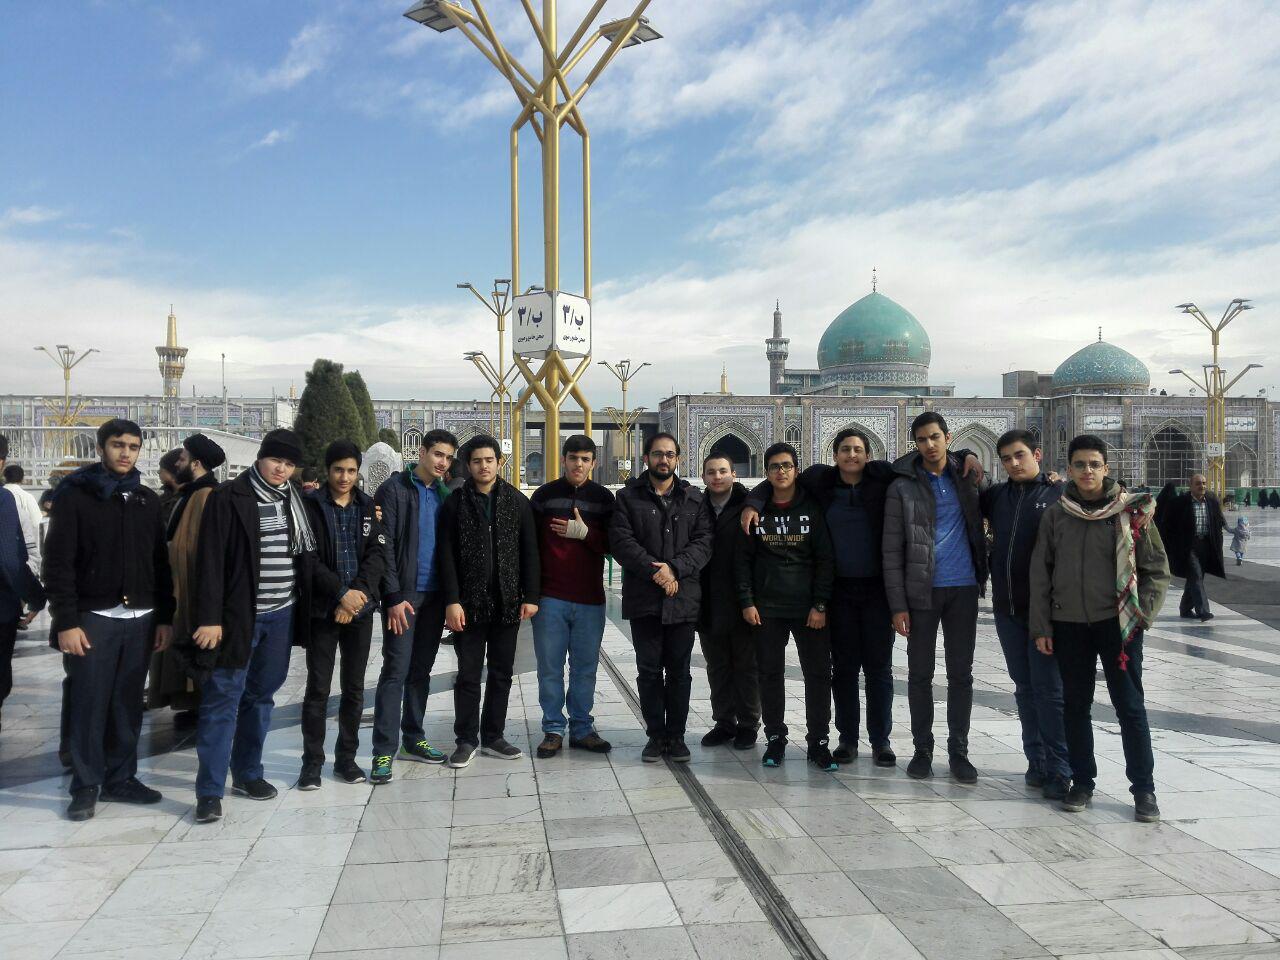 اردوی زیارتی مشهد مقدس دبیرستان معارف اسلامی و علوم انسانی